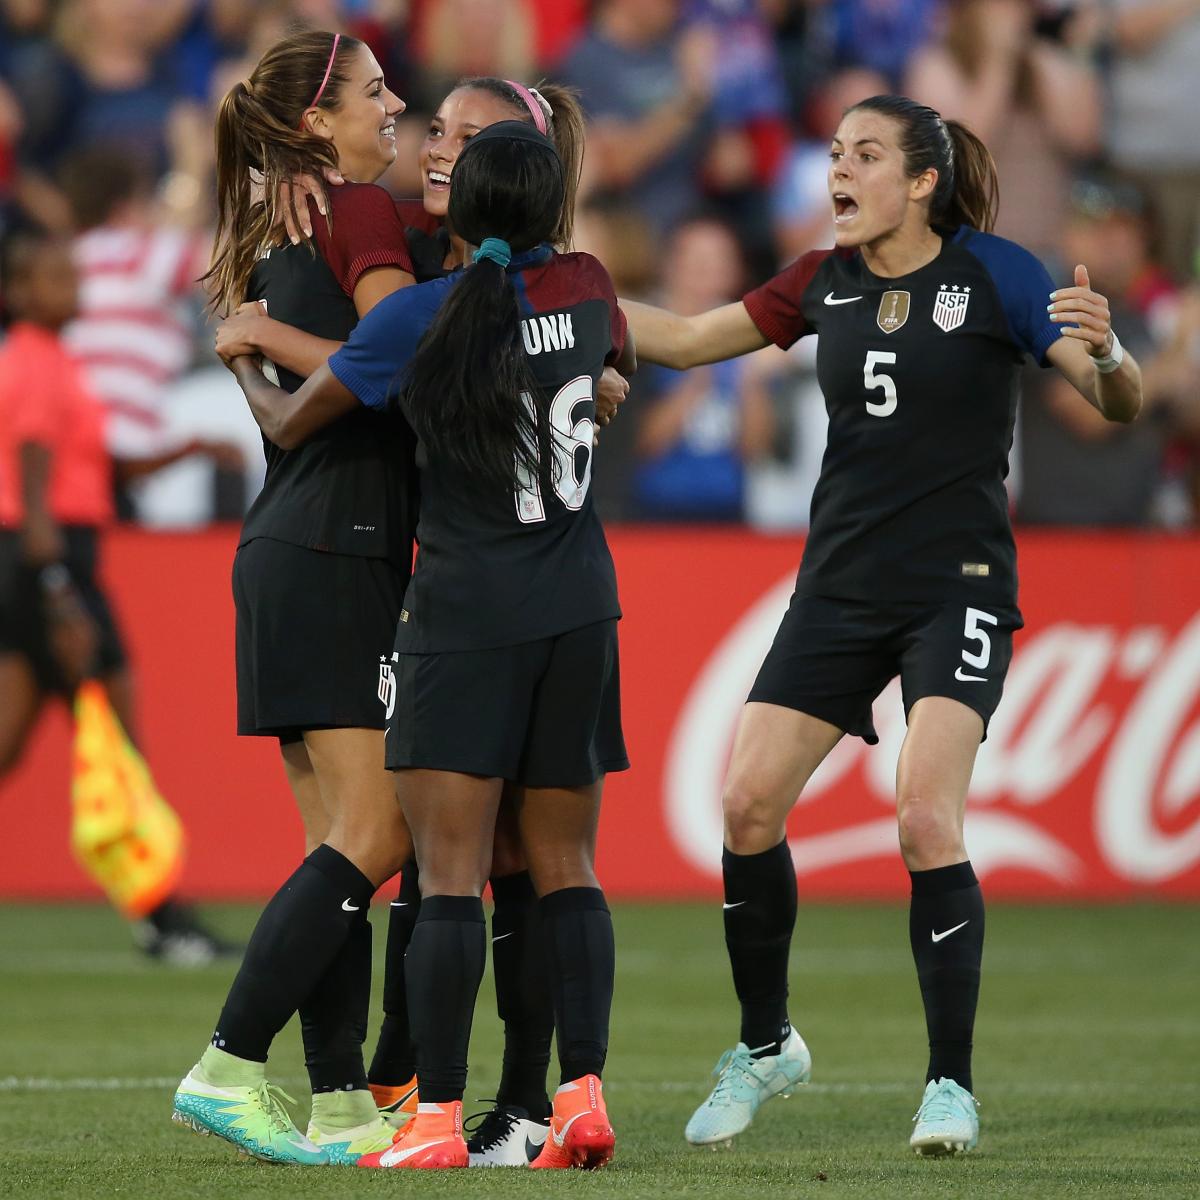 USA vs. Japan Women's Soccer: Score, Reaction from 2016 International